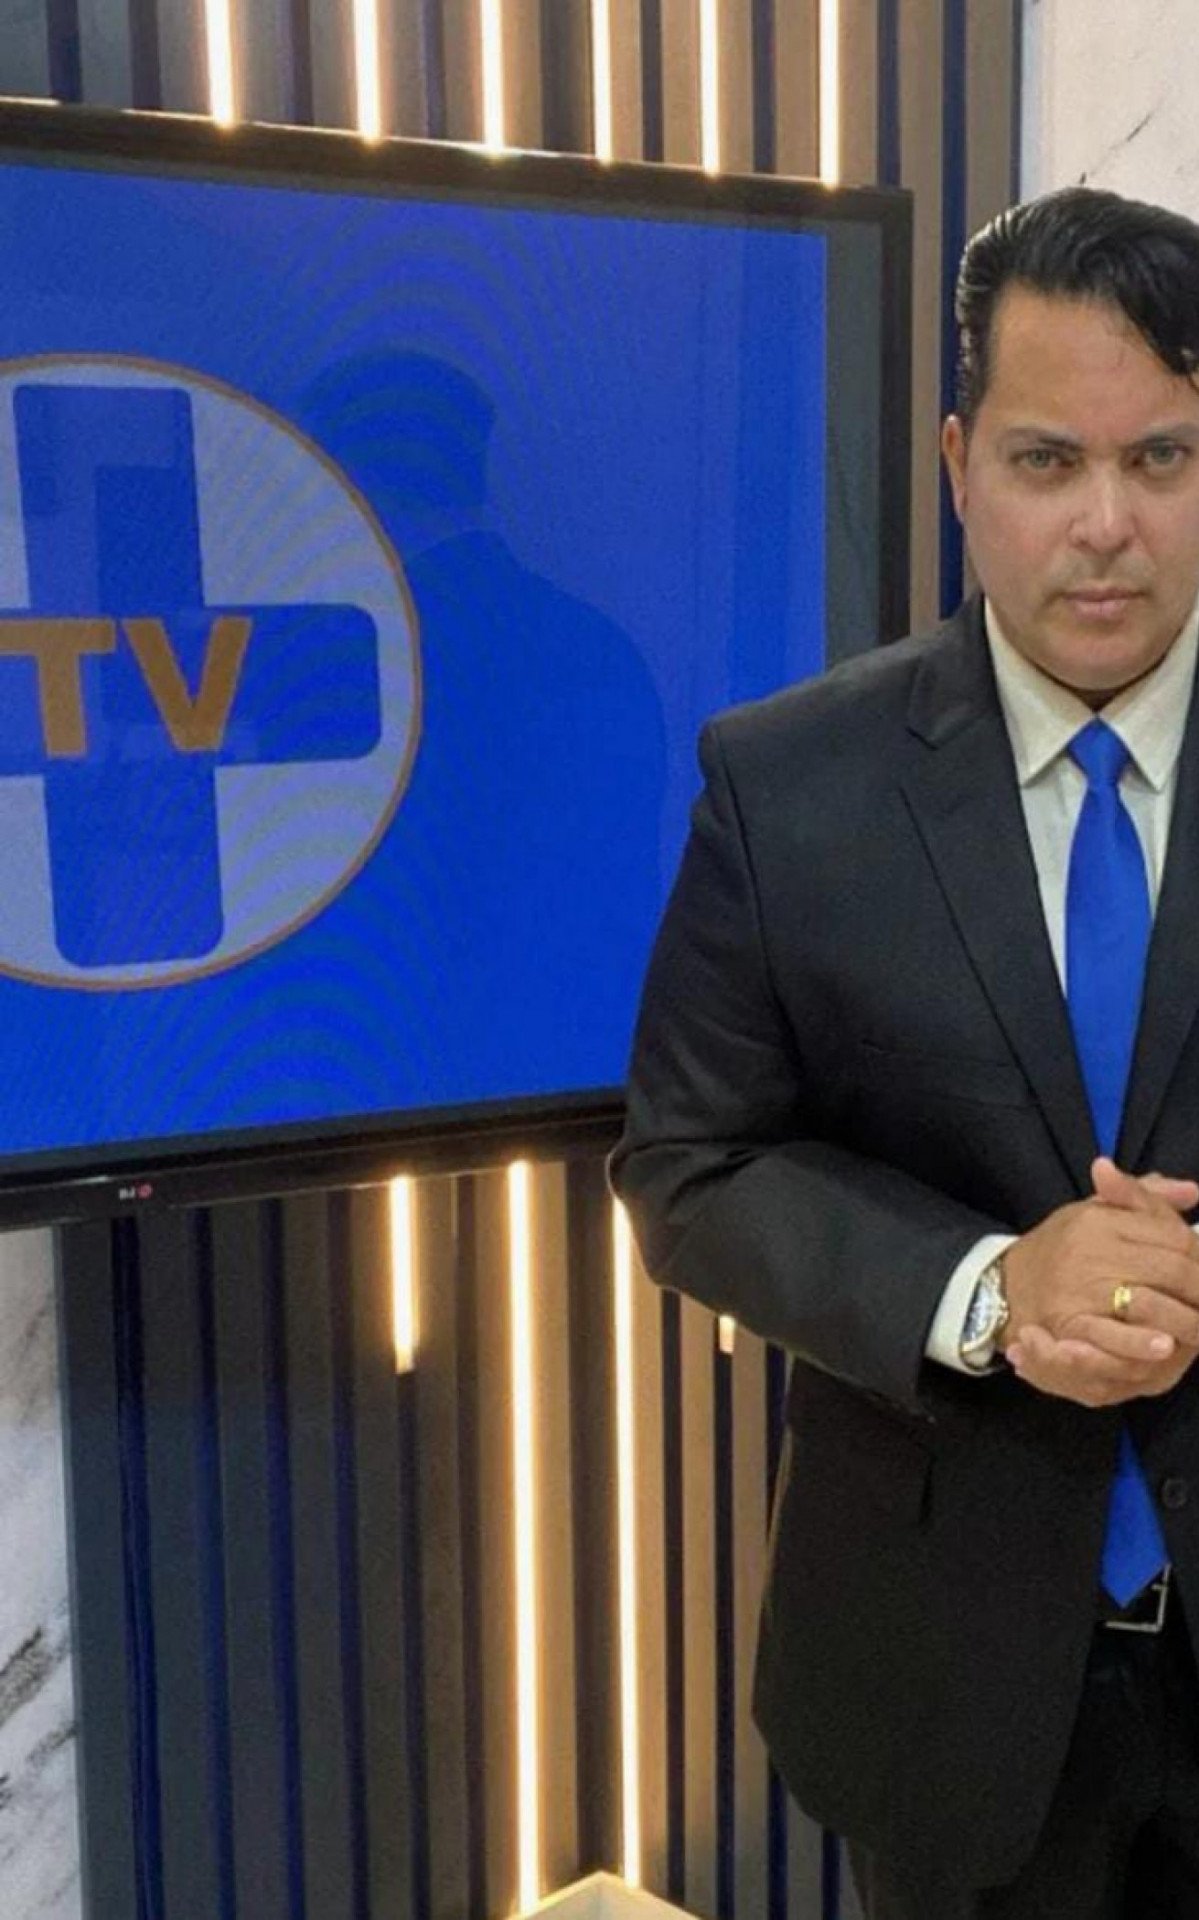 Fabiano Medina retorna a TV com programas inéditos na próxima terça-feira dia 16 - Foto: Pedro Ferrer